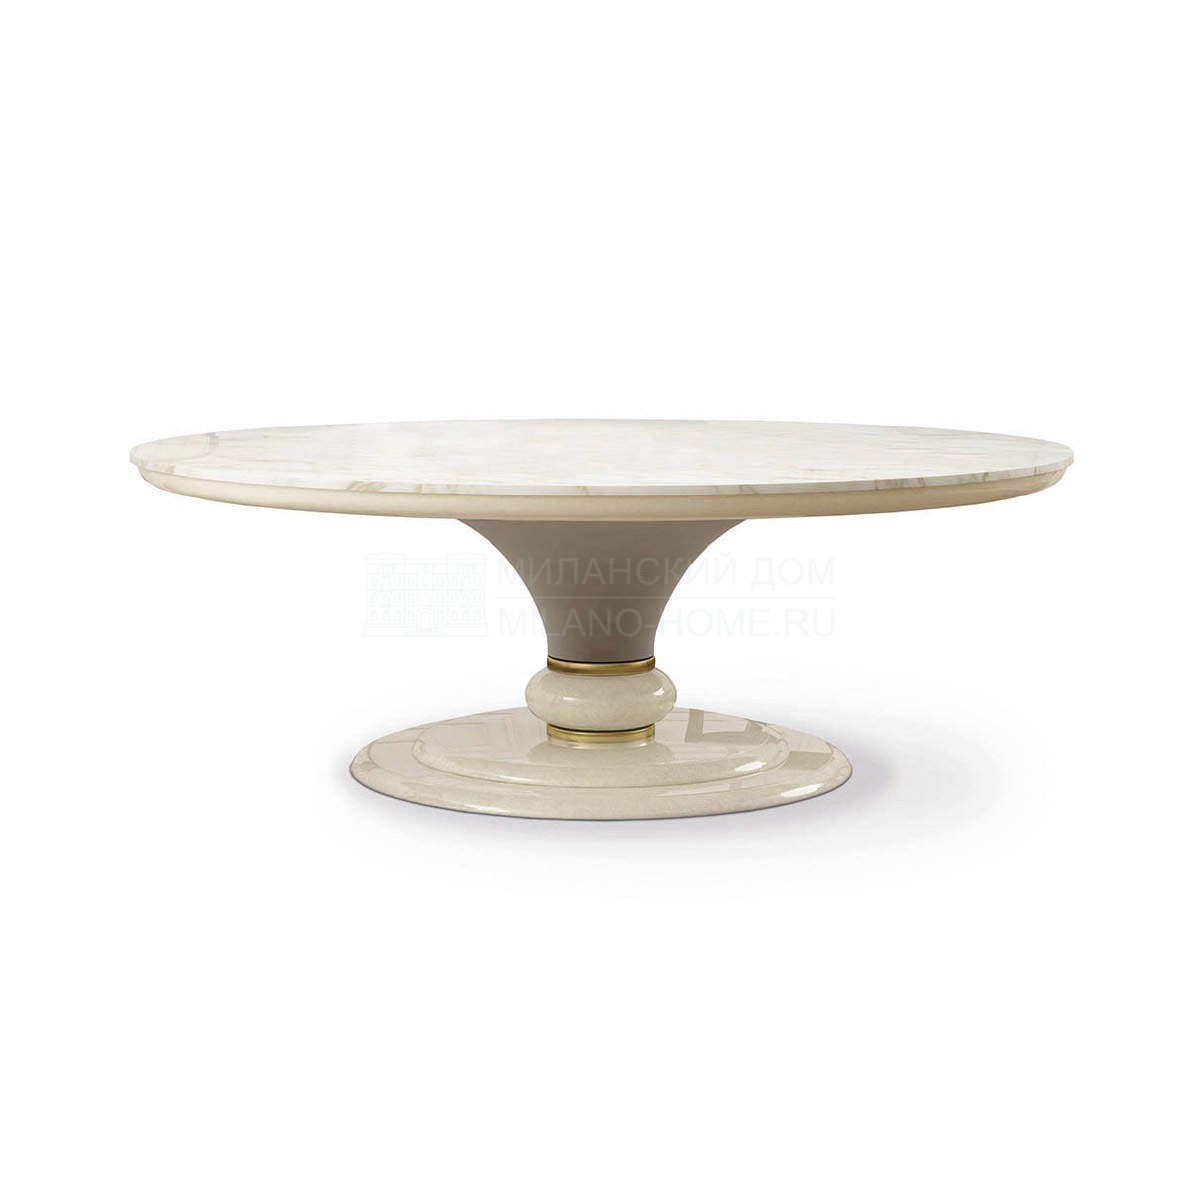 Обеденный стол Caractere round table из Италии фабрики TURRI